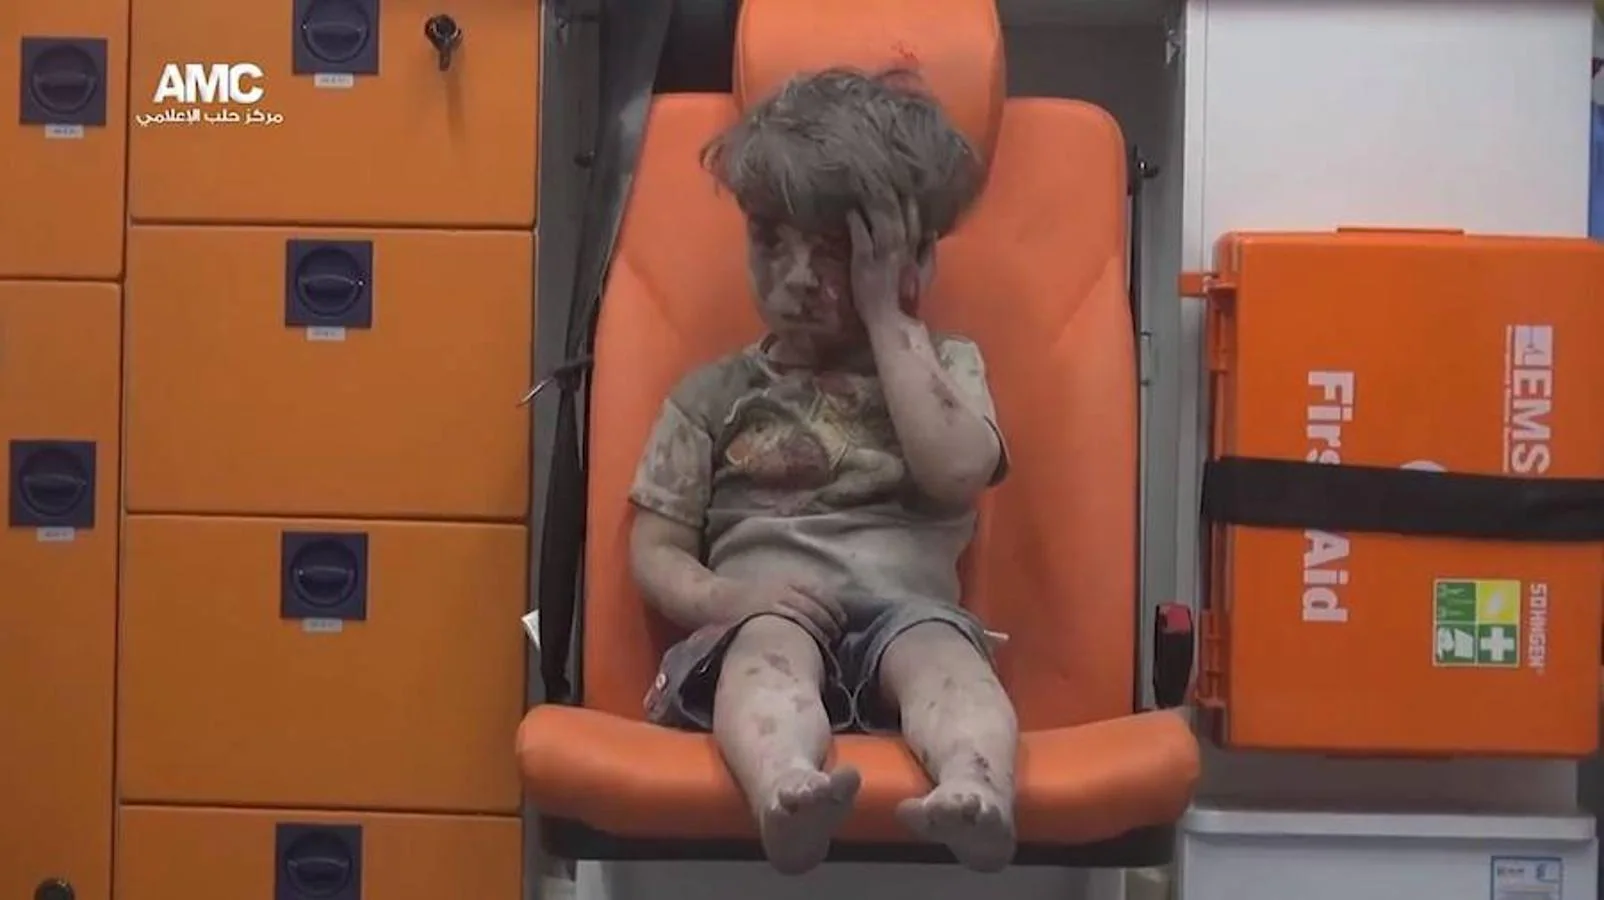 La imagen de Omran, de cinco años, ha recorrido esta semana el mundo. Representa la cara de la tragedia en Siria, y de la agonía de una ciudad, Alepo, a la que no llega la ayuda humanitaria. La ONU ha reclamado un alto el fuego de 48 horas